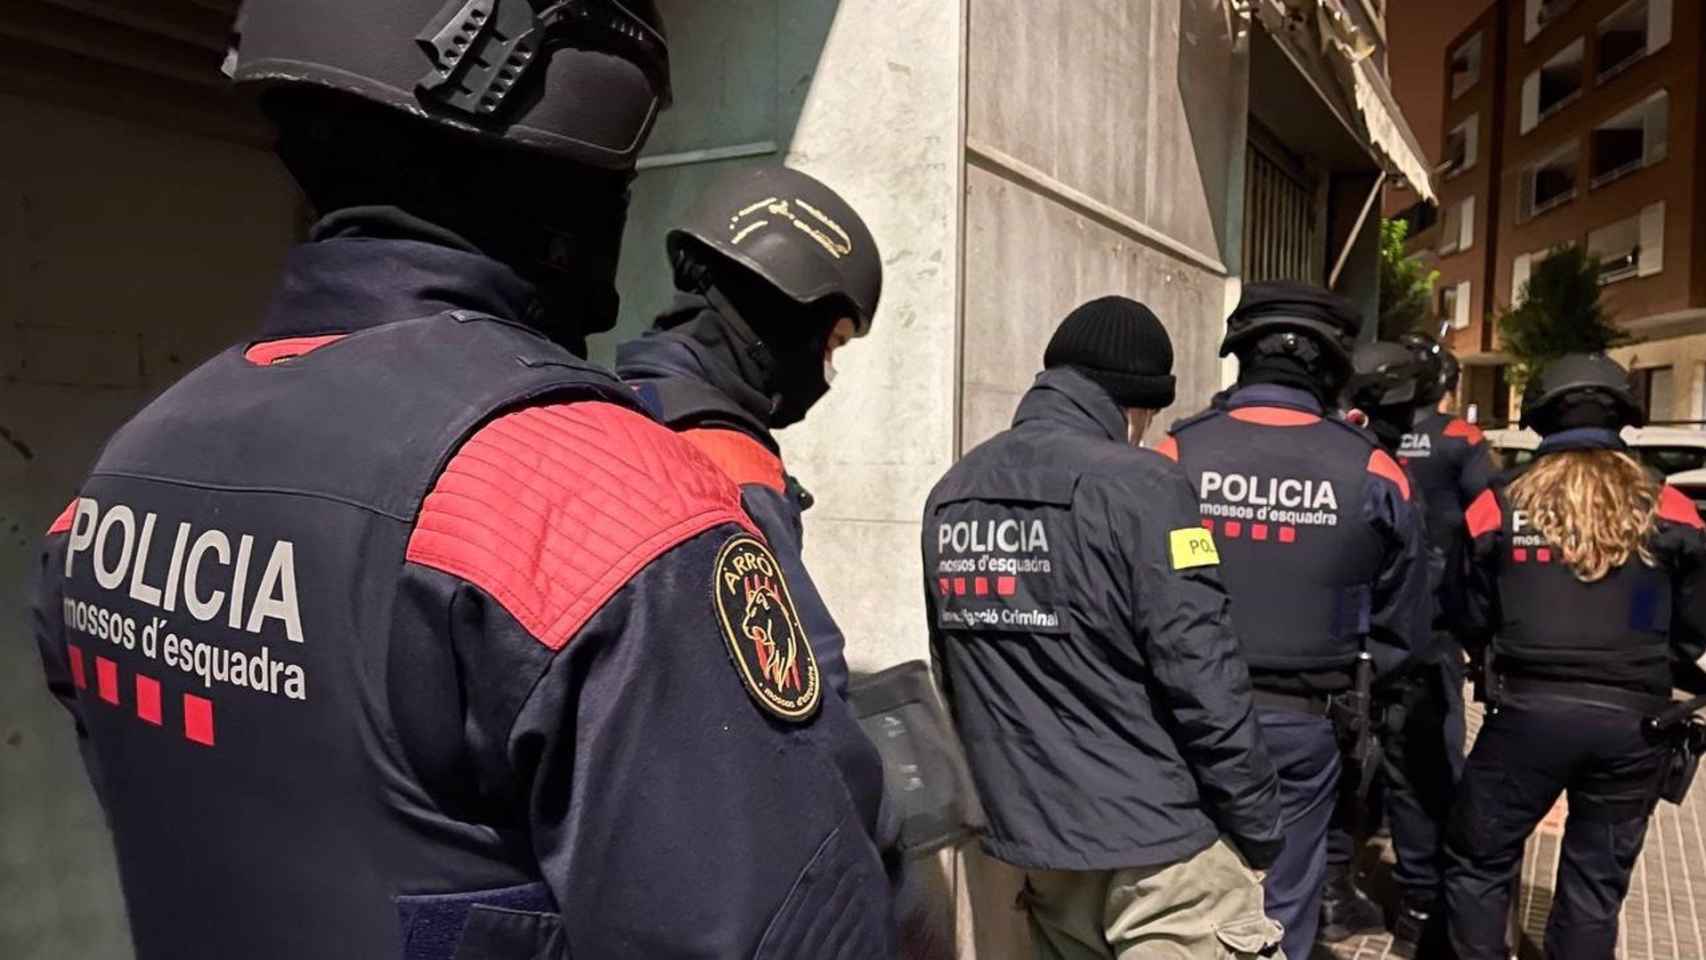 Agentes de los Mossos d'Esquadra en una imagen de archivo / MOSSOS D'ESQUADRA